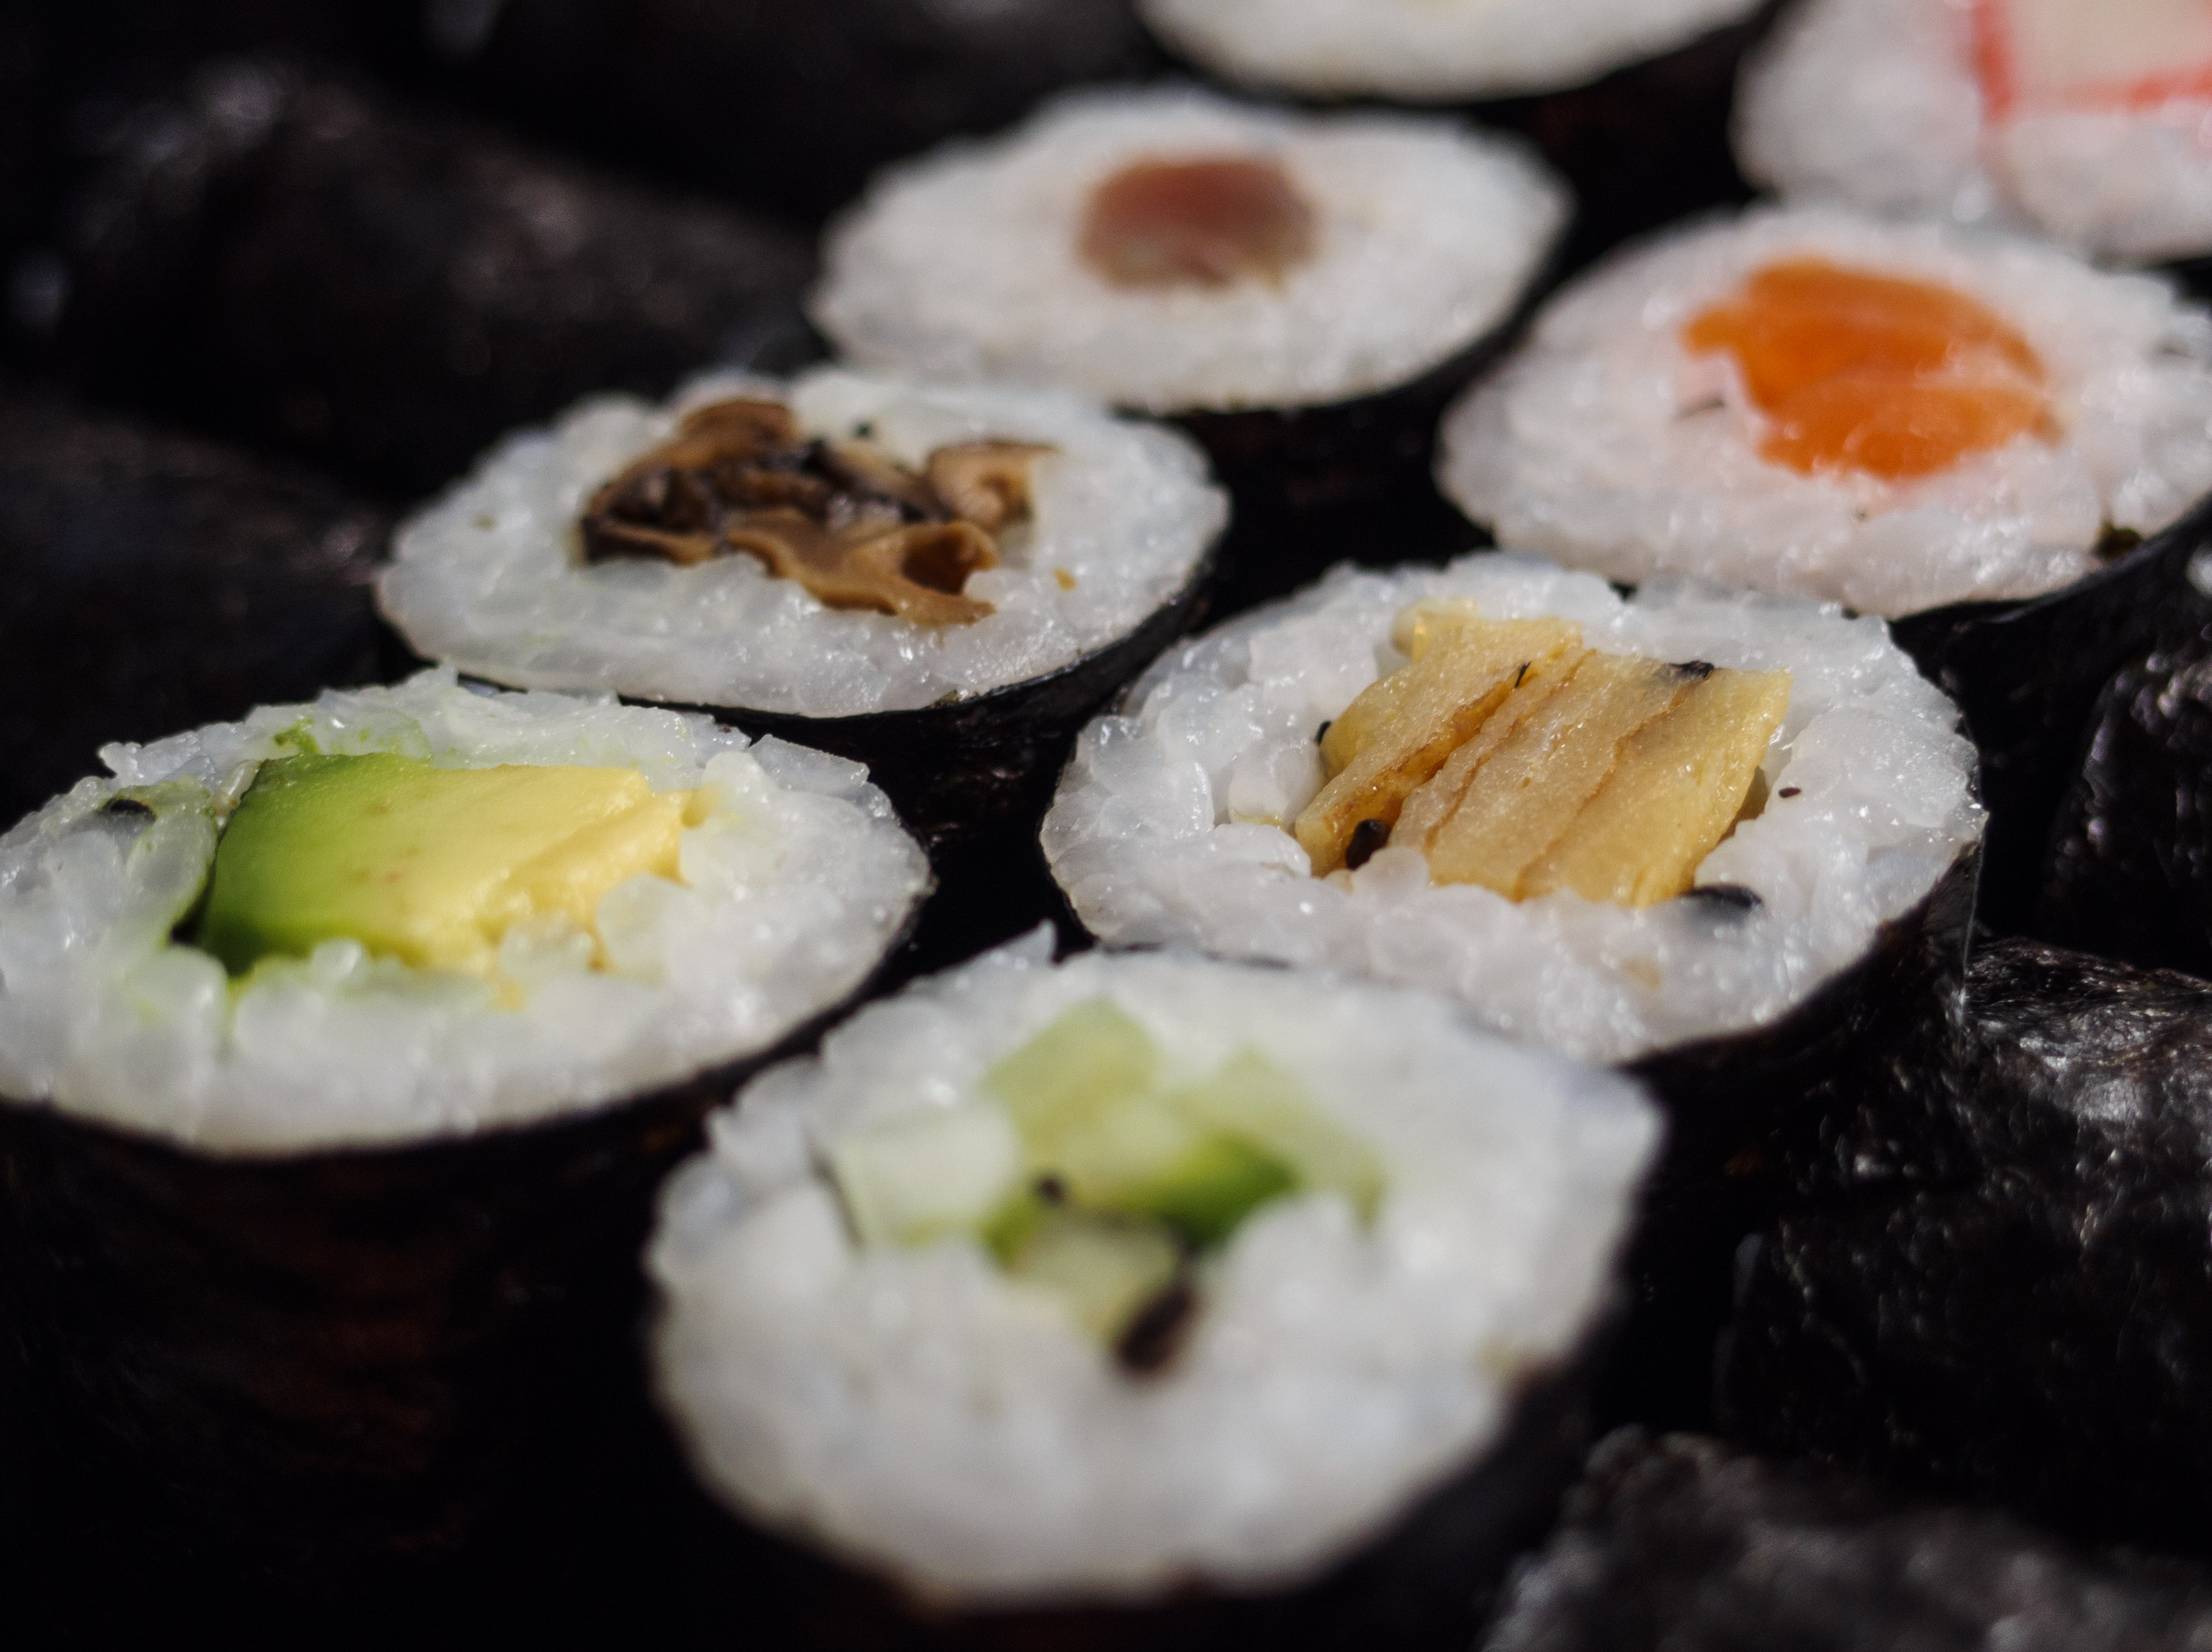 Sushi - Comida japonesa | Foto de archivo libre de regalías ...